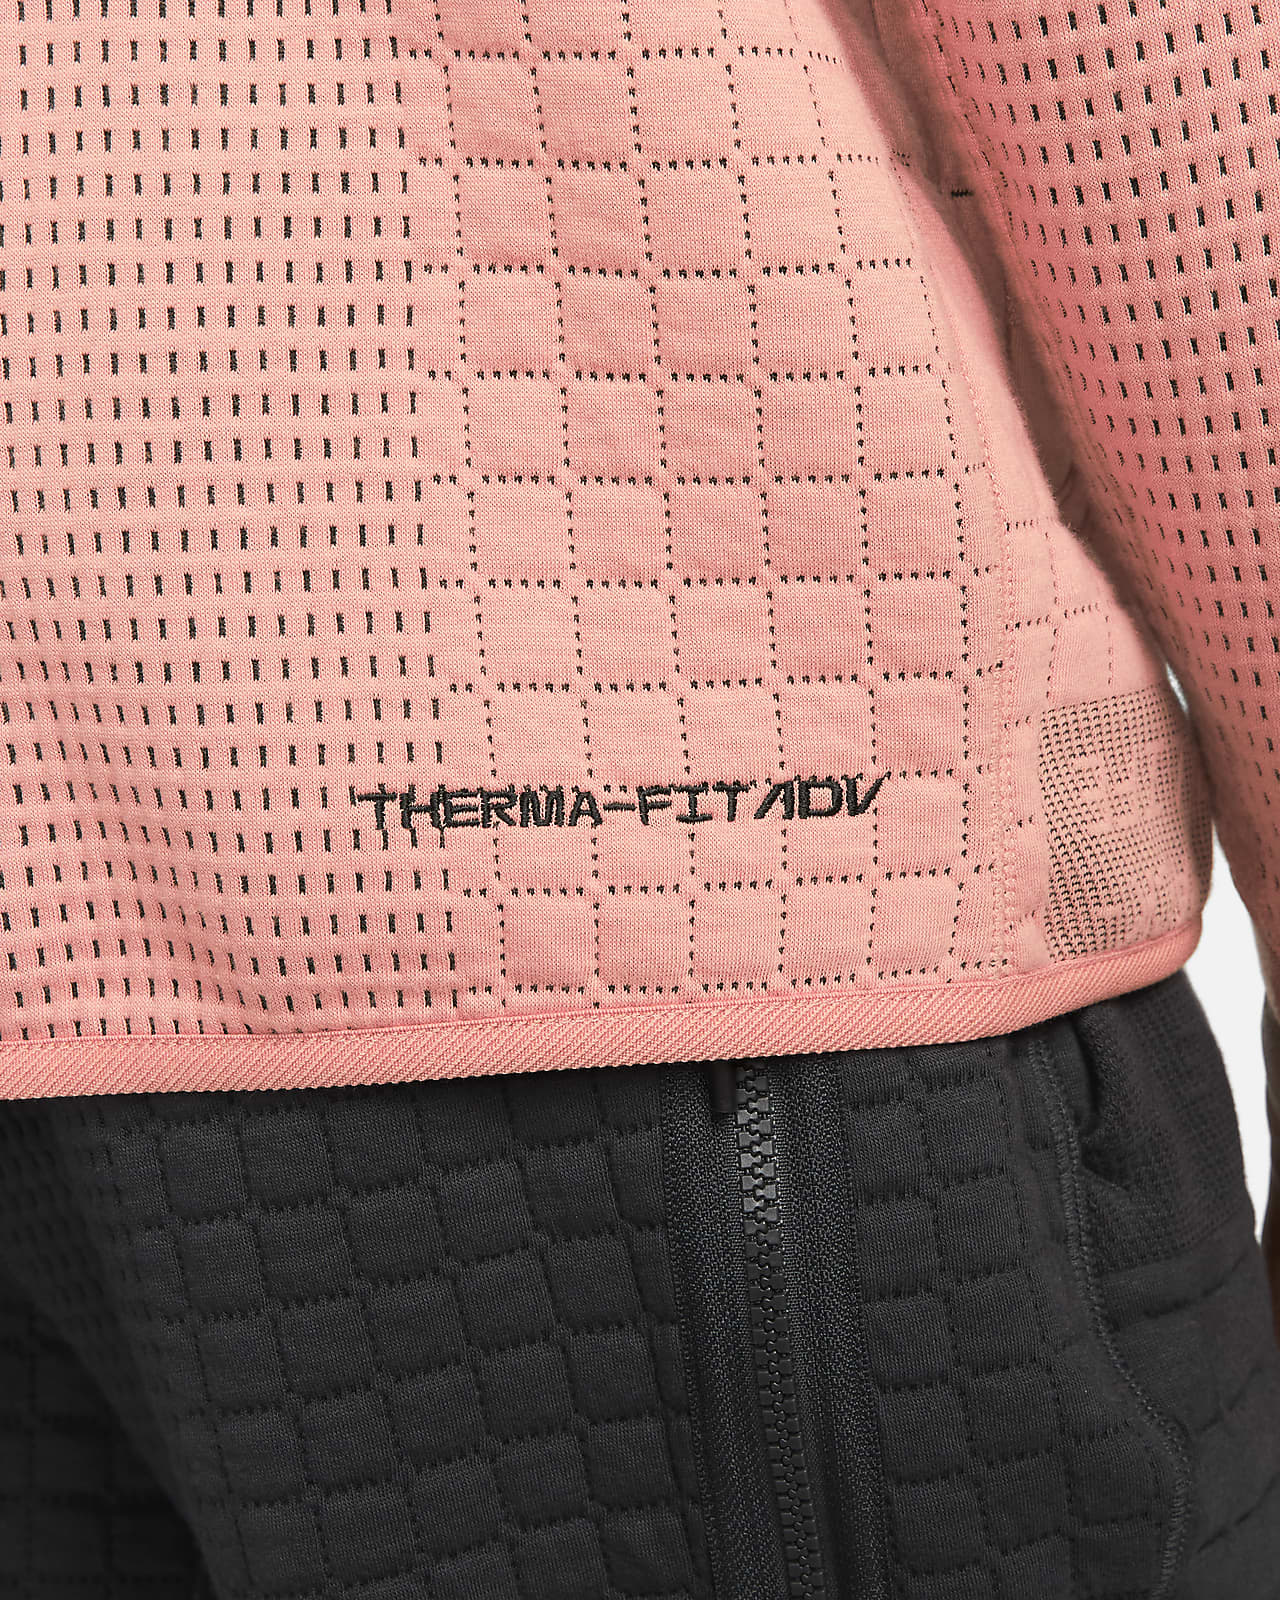 Nike Sportswear Therma-FIT ADV Tech Pack Men's Engineered Fleece 